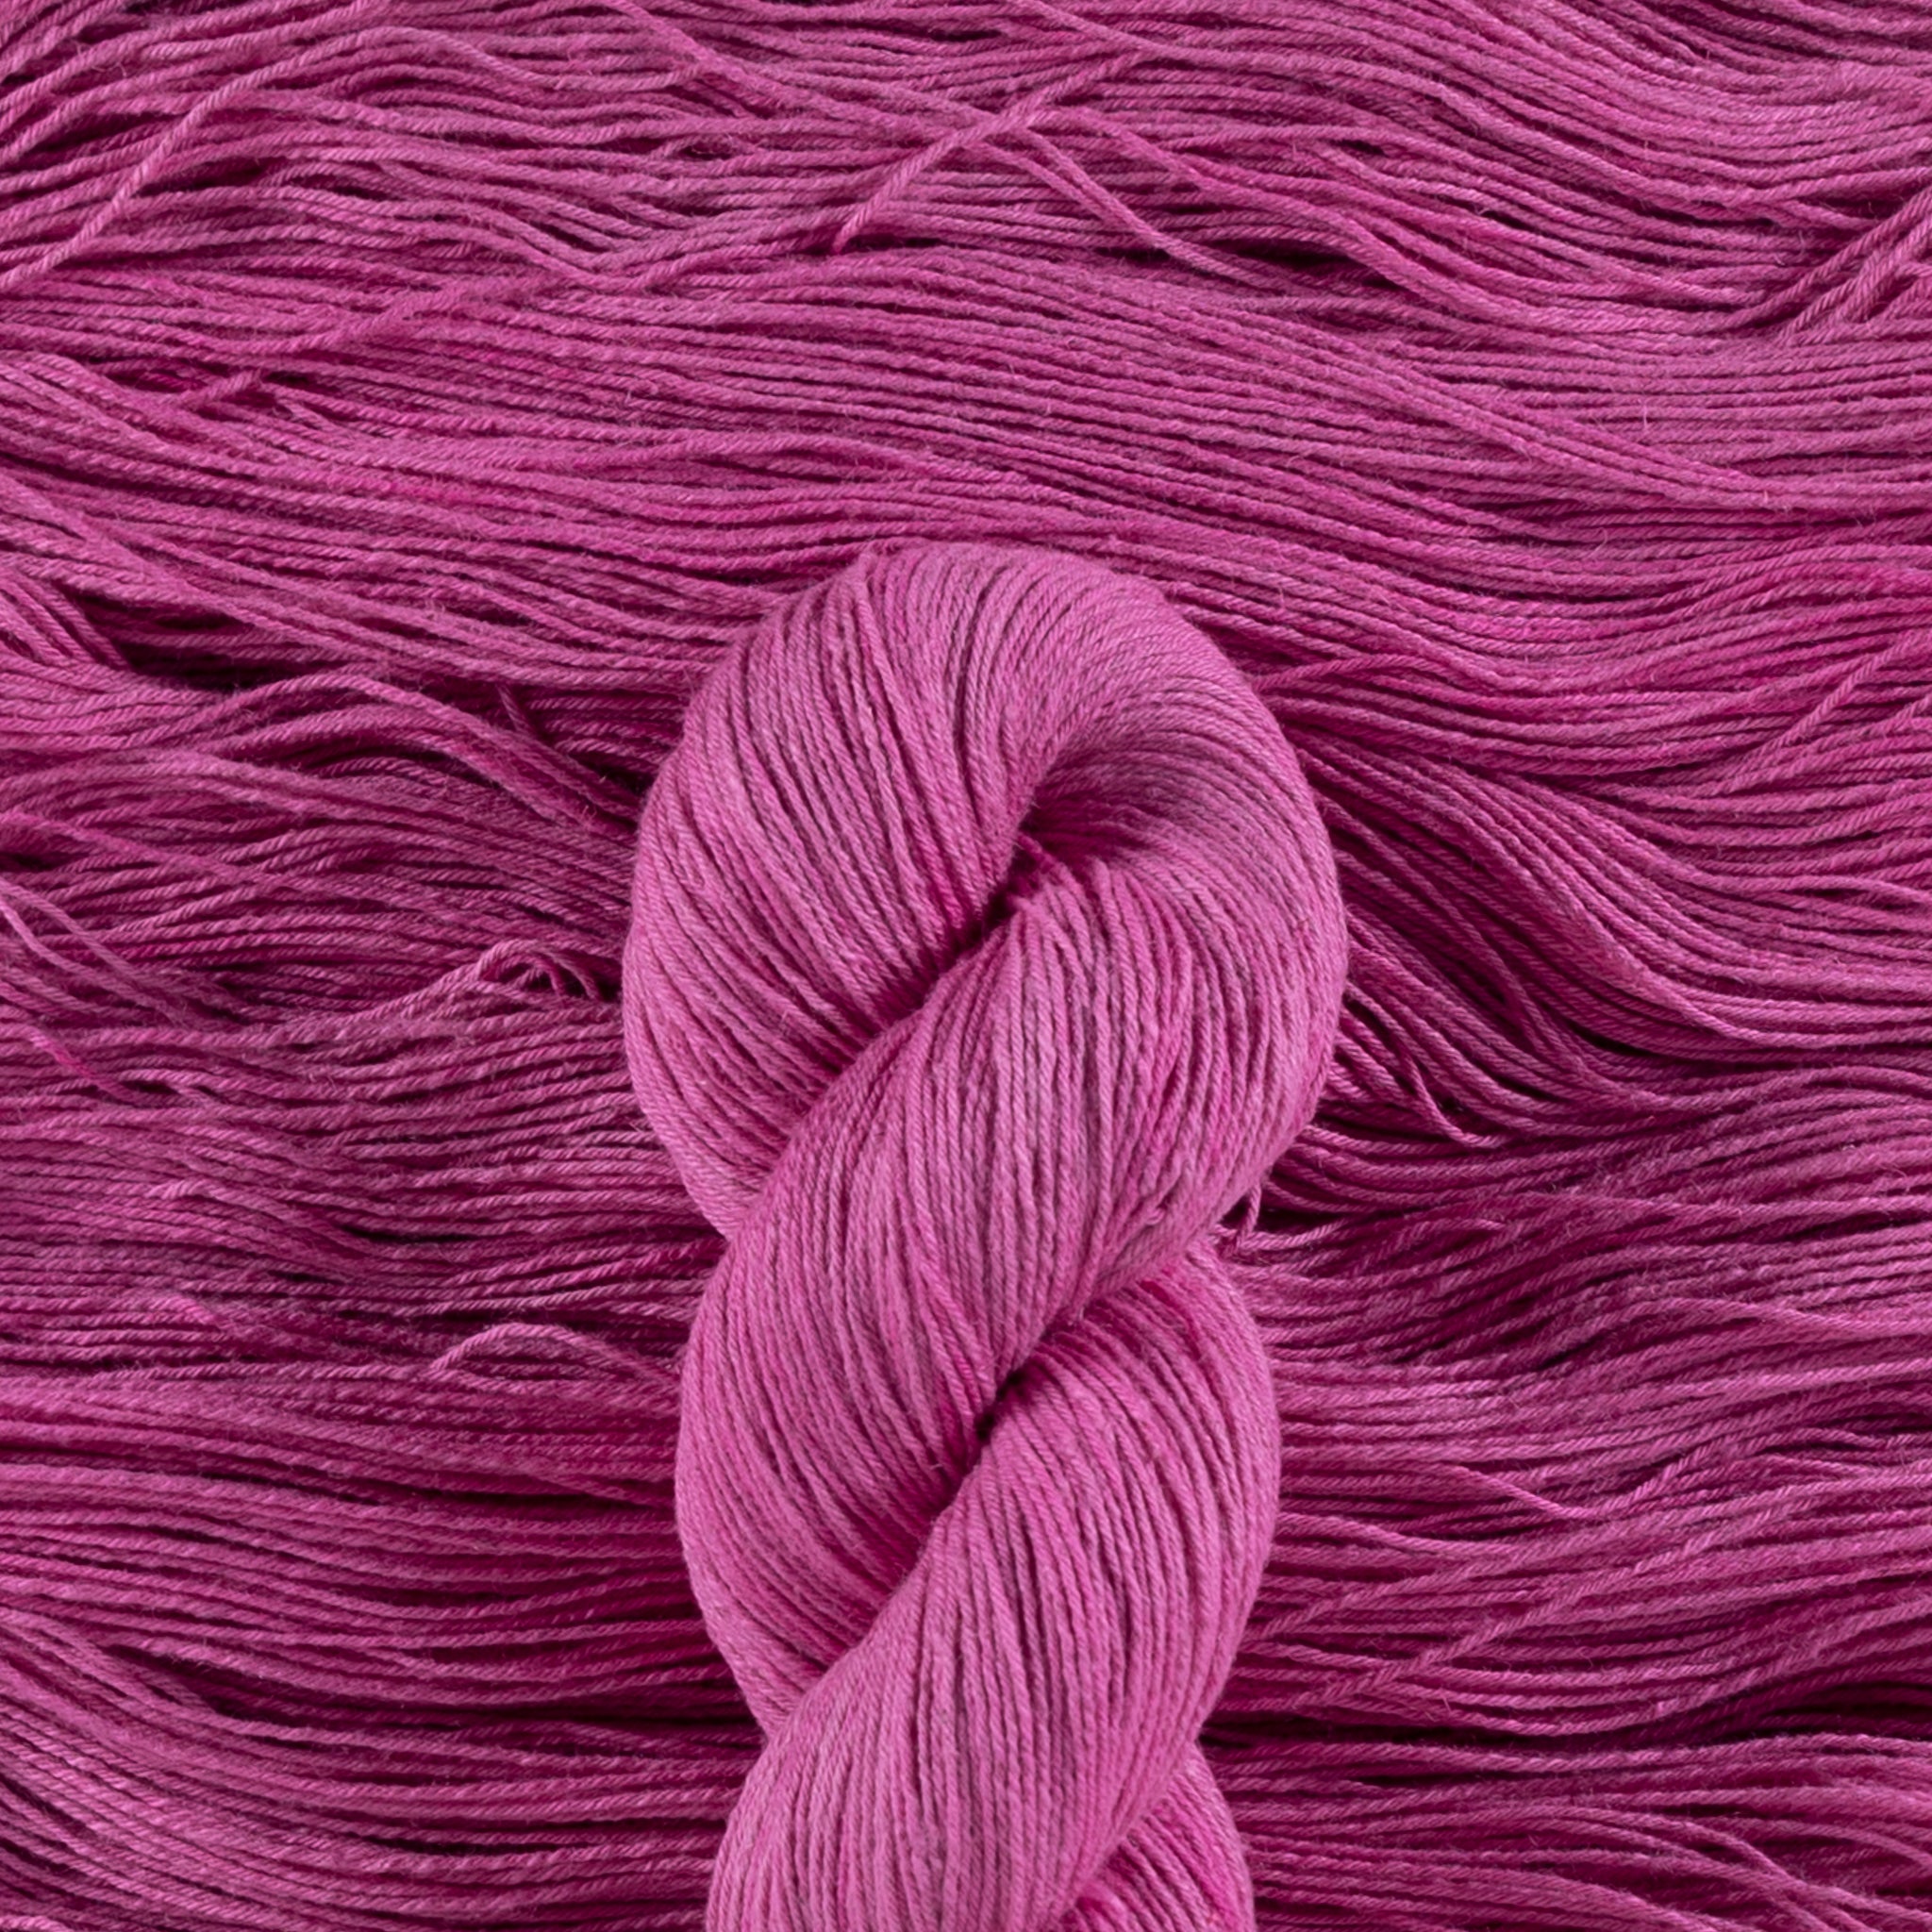 MARONA - Cormo Wool - DK weight - Ritual Dyes